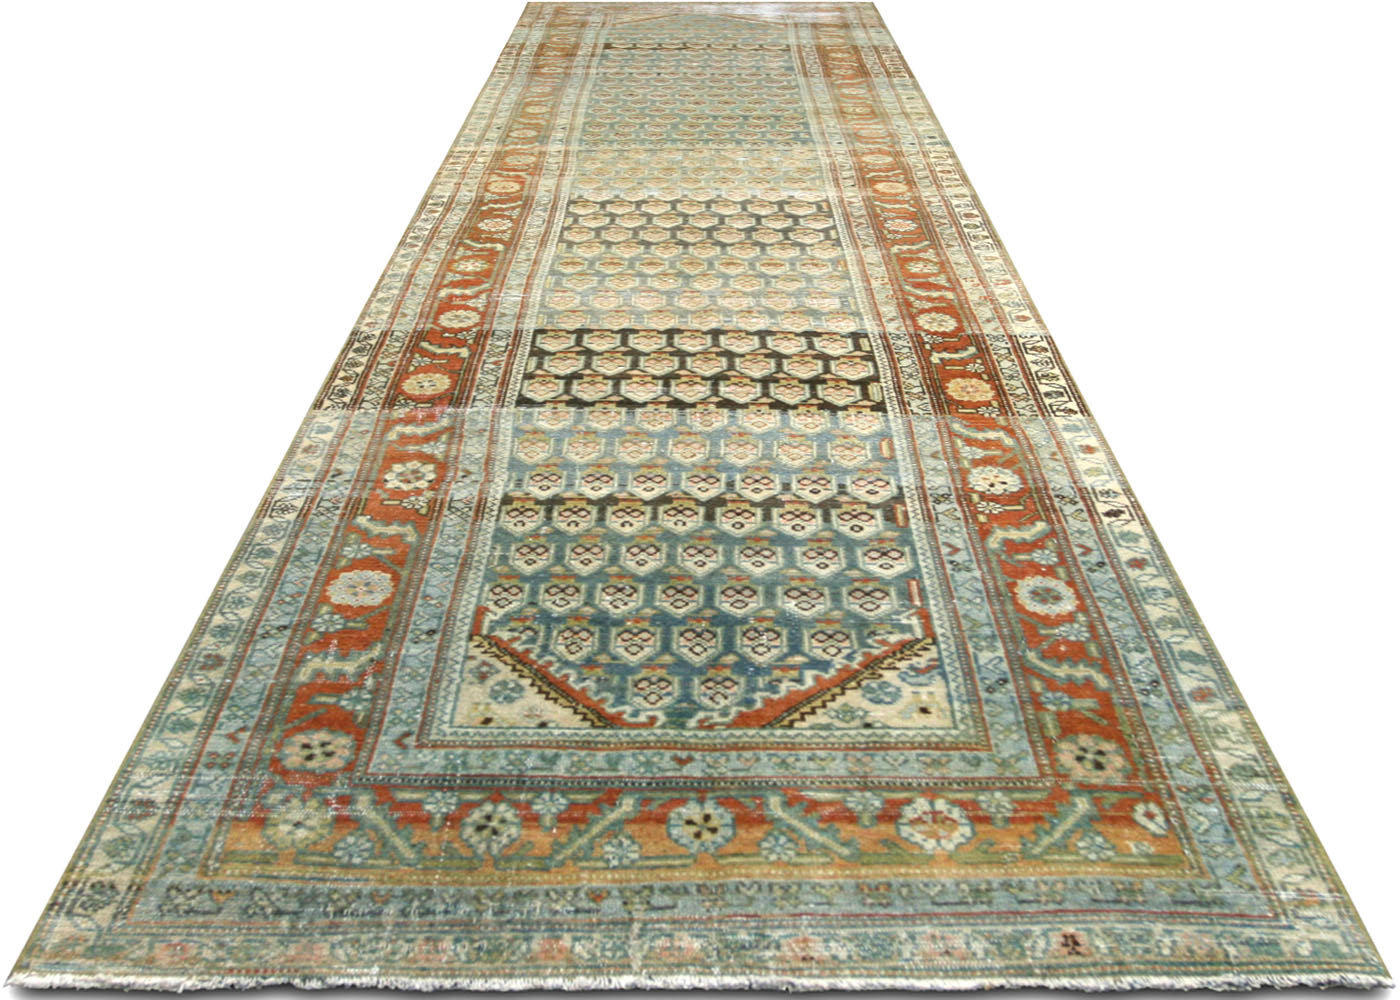 Antique Persian Melayer Runner - 3'5" x 15'10"